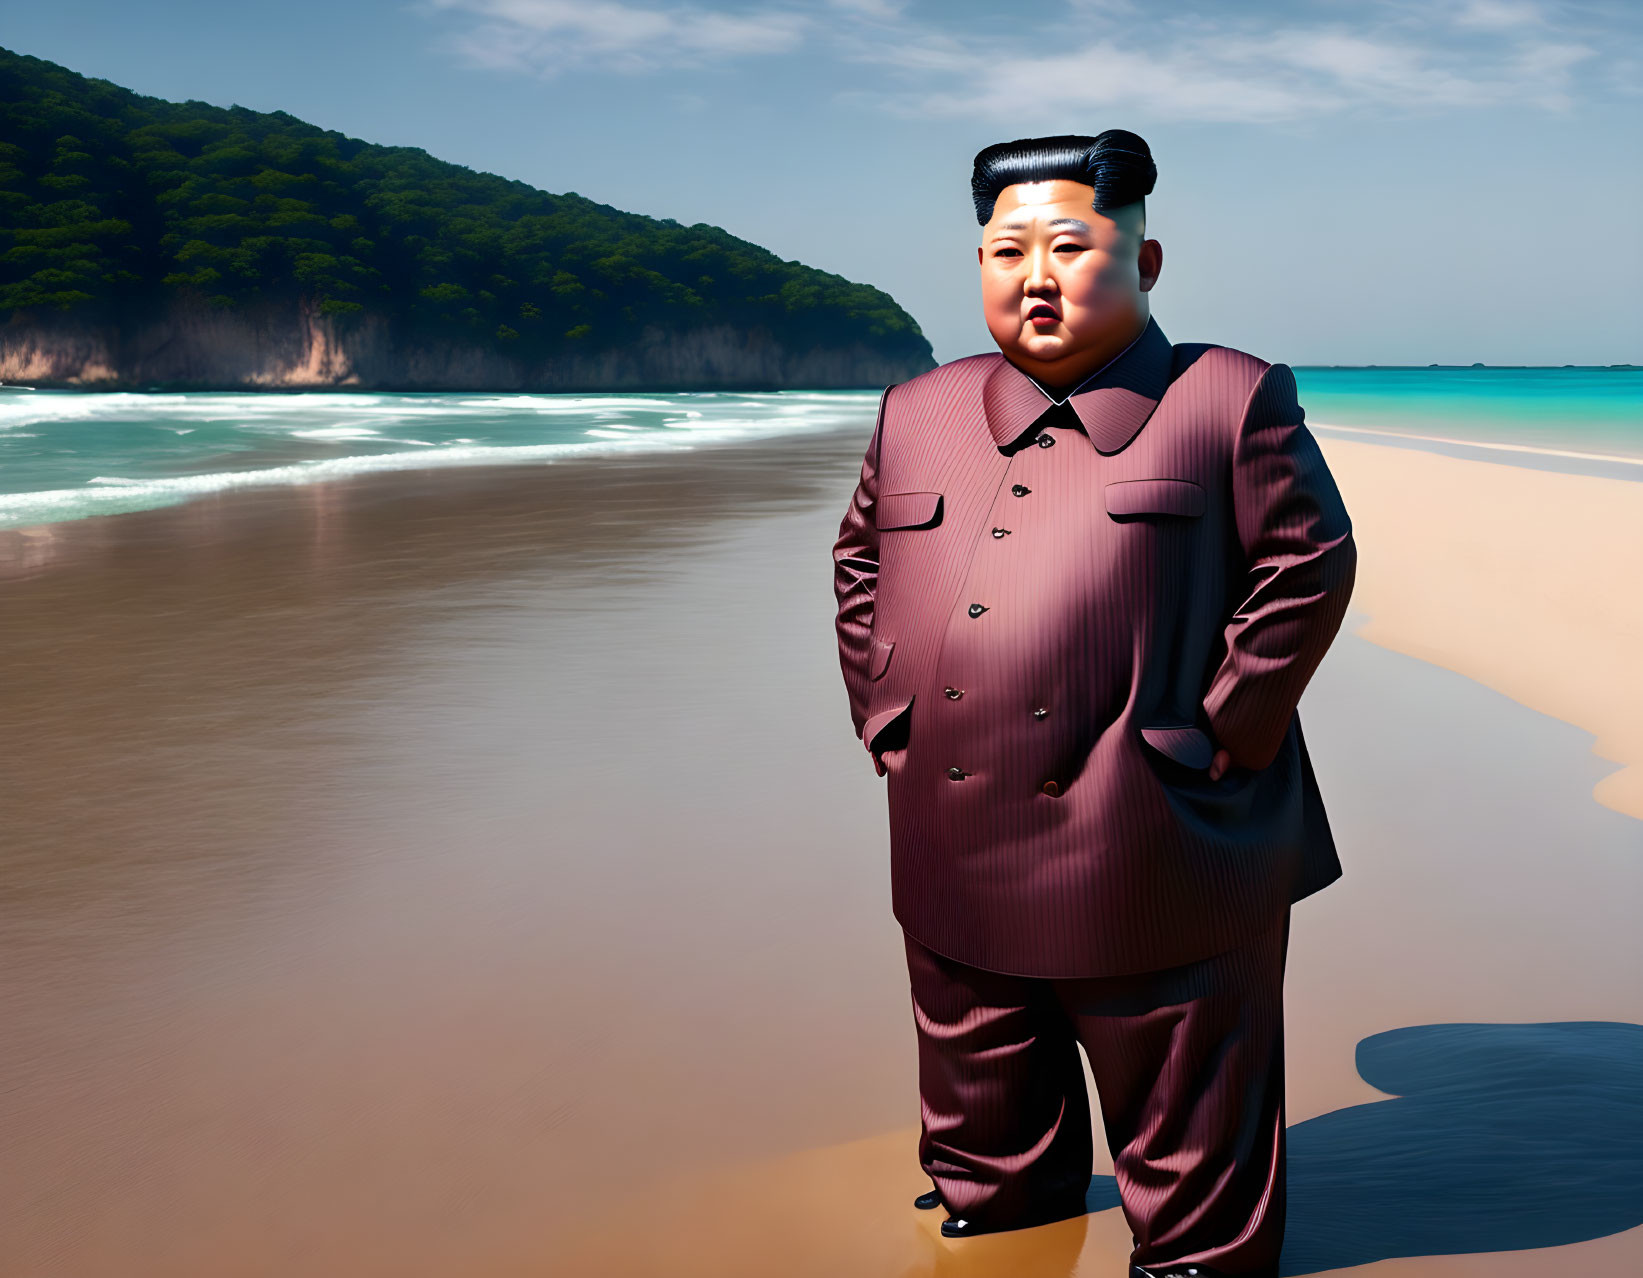 Kim Jong-un on the beach. 